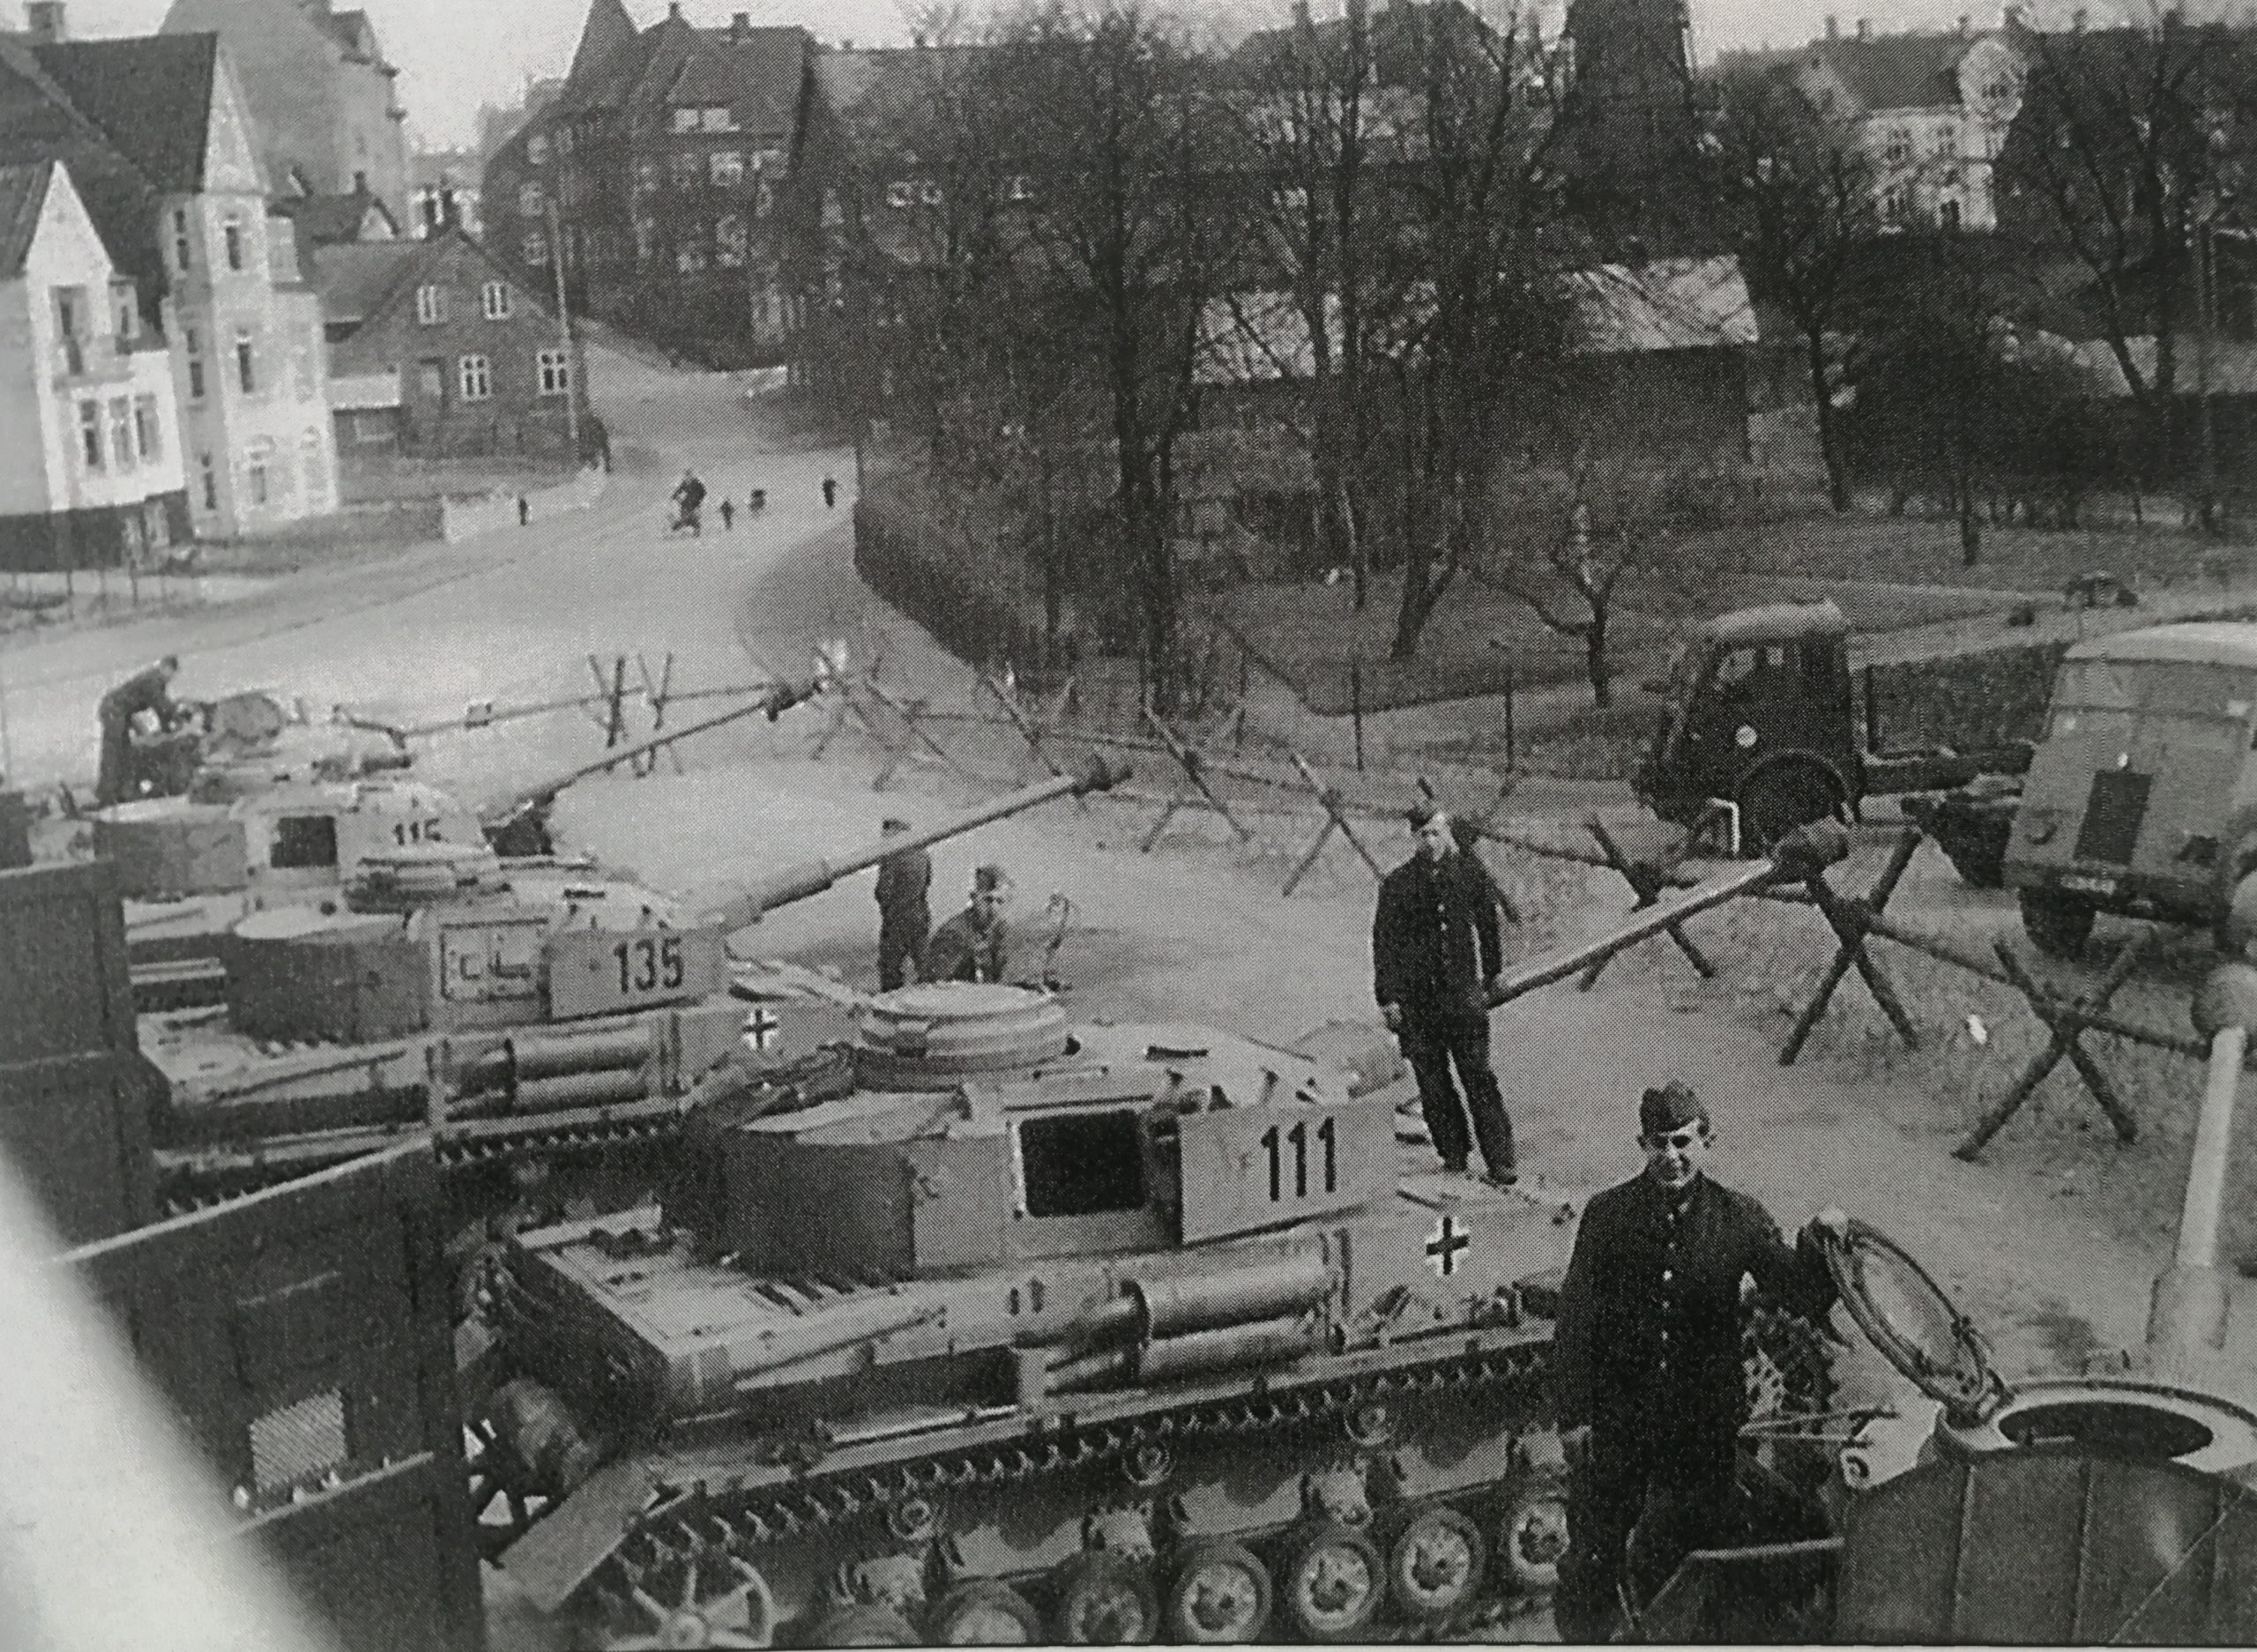 Kampvogne type IV H fra 233. Panzer-Division i Viborg 1944. Kampvognene bærer numrene 111, 135 og 115 dvs. vogne fra 1. kompagni, 1. deling vogn nr 1, 1. kompagni, 3. deling vogn nr 5 og 1. kompagni, 1. deling vogn nr 5. I Baggrunden til højre skimtes franske køretøjer af mærket AHN, typisk med deres skrå kølerhjelme.(foto: Nationalarkivet)